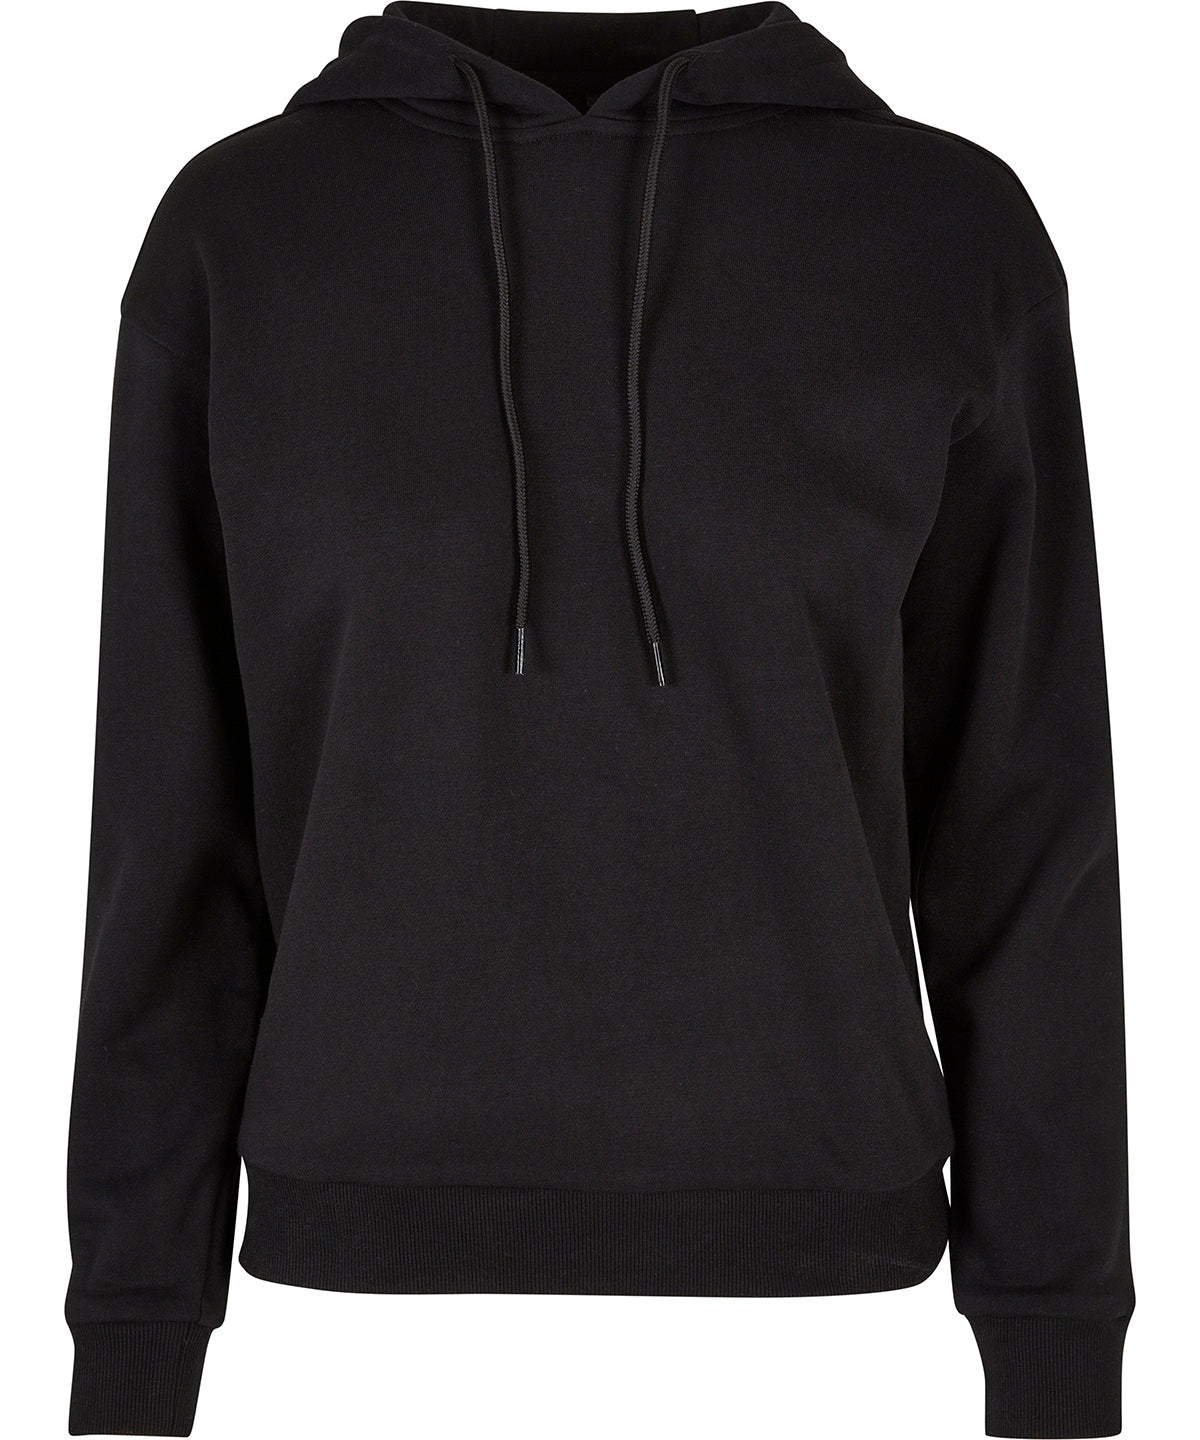 Personalised Hoodies - Black Build Your Brand Women’s everyday hoodie